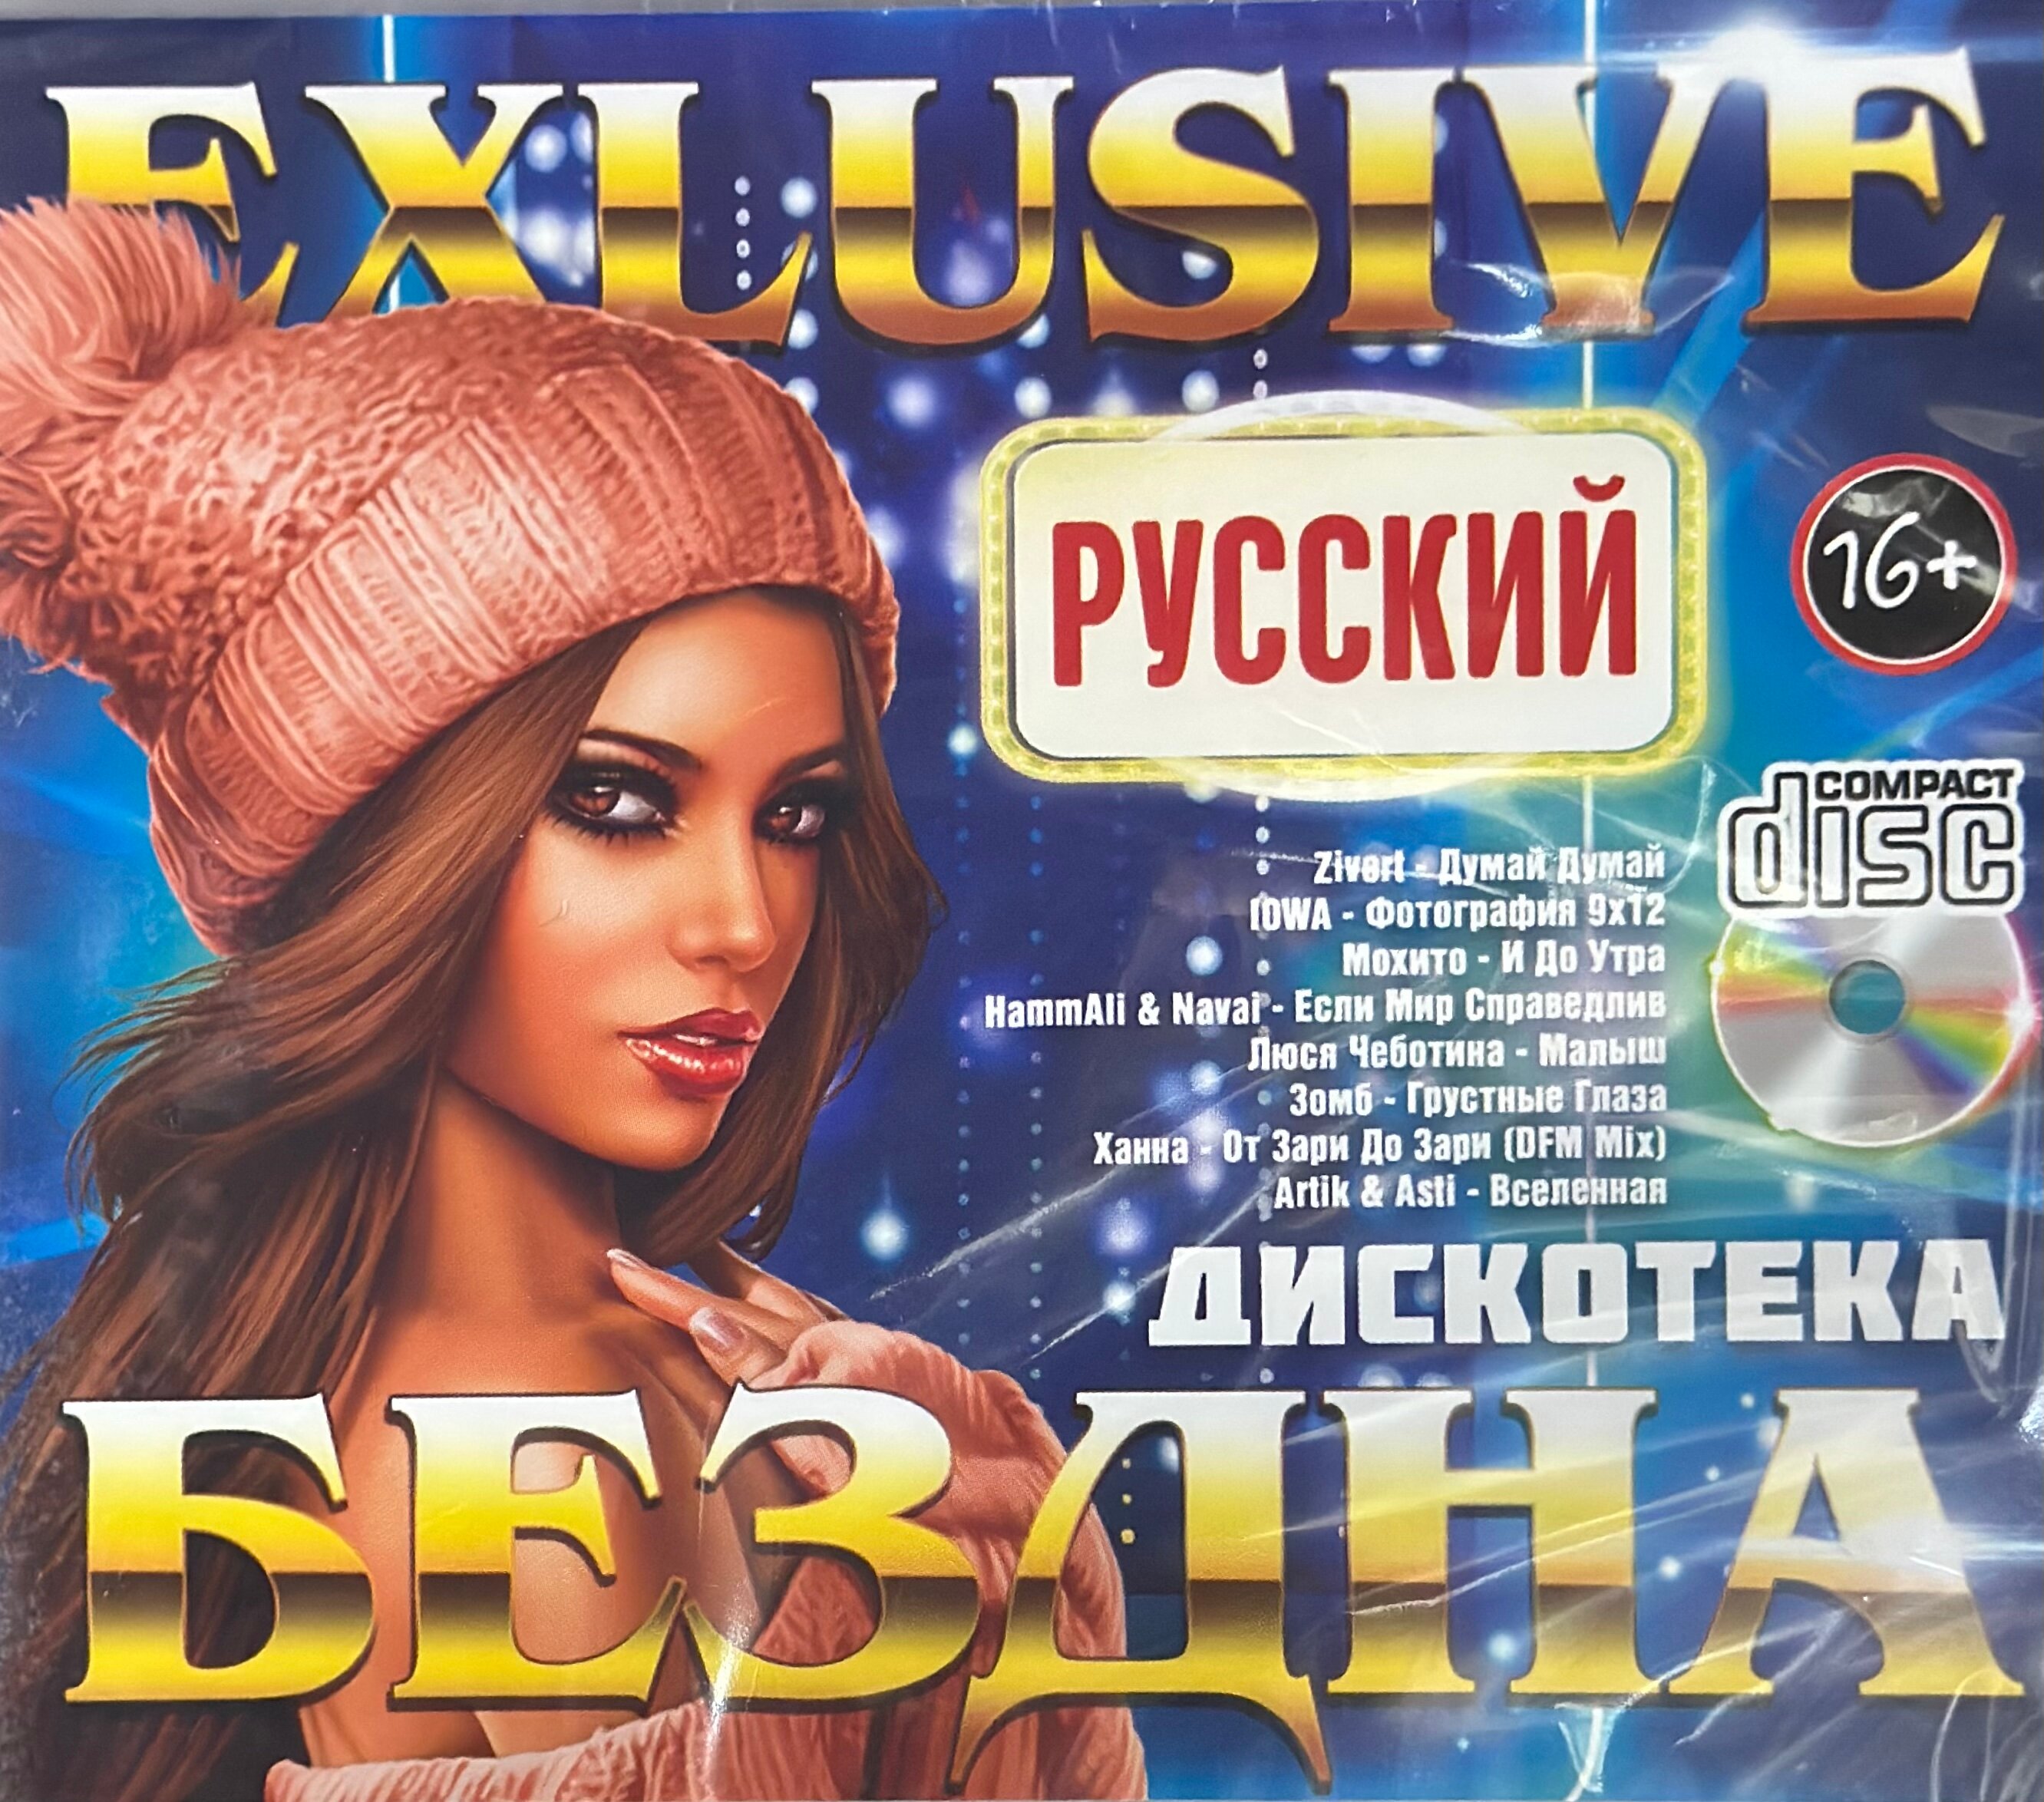 Диск CD с музыкой EXLUSlVE Дискотека Бездна русский Всего 25 песен 2023 г